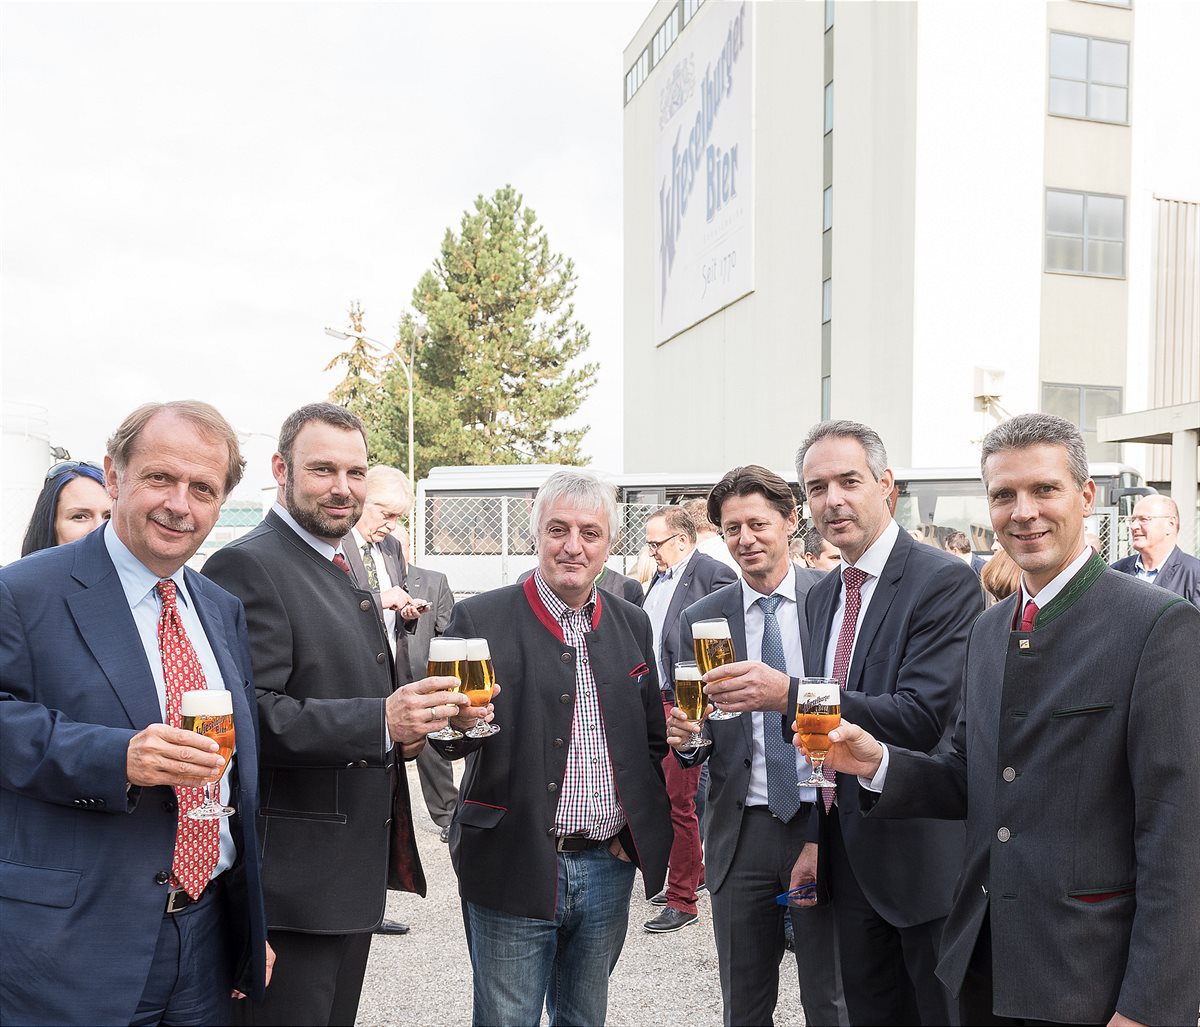 Brauerei Wieselburg setzt mit Investitionen und Innovationen ein starkes Zeichen für den Standort